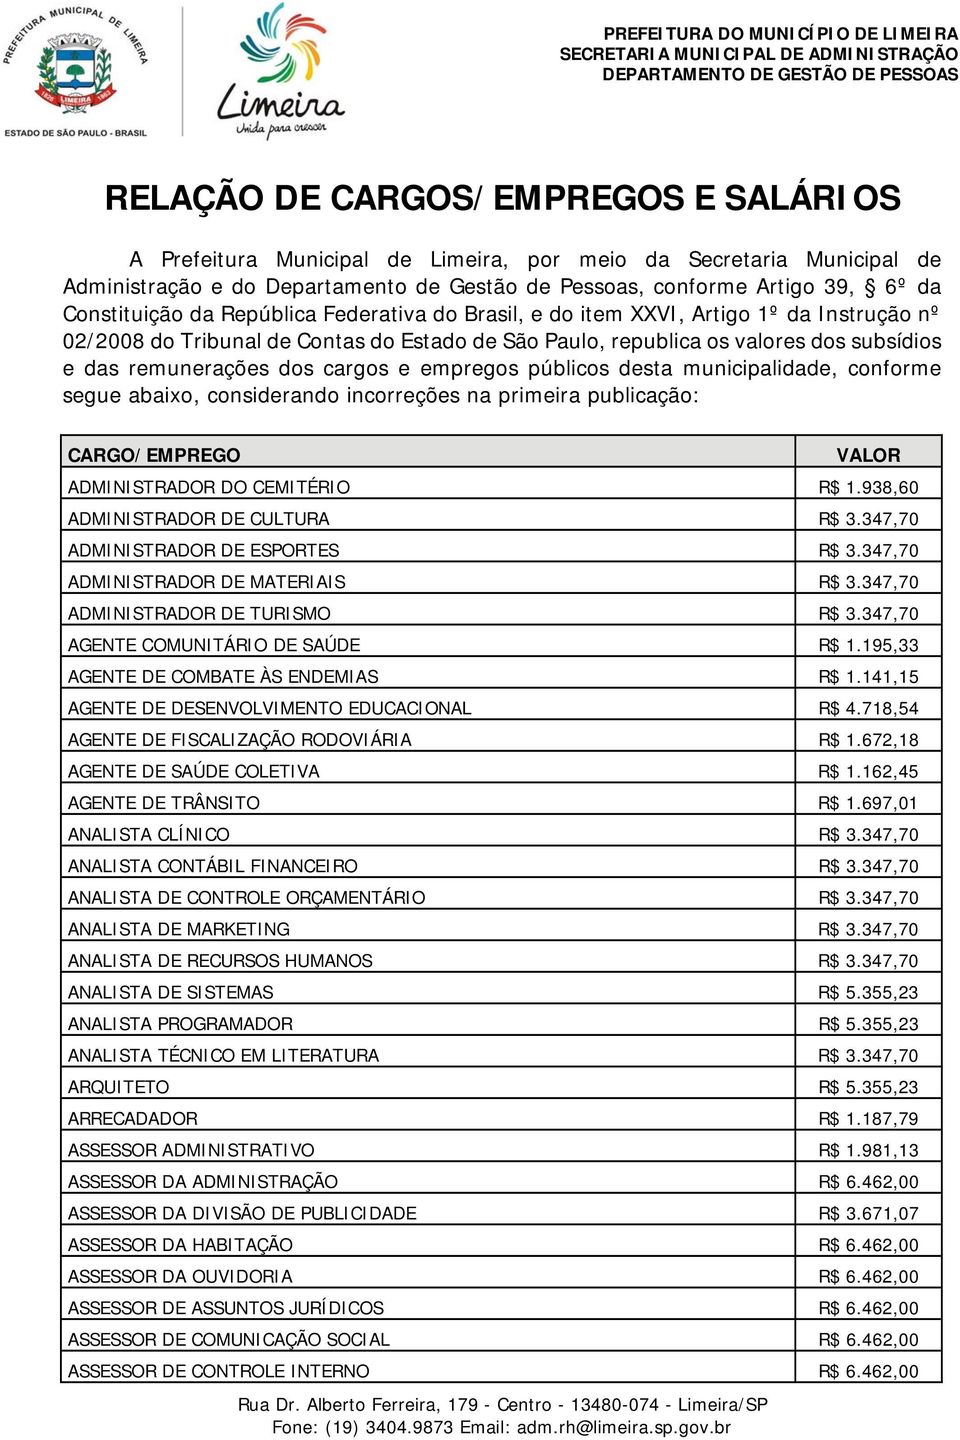 dos cargos e empregos públicos desta municipalidade, conforme segue abaixo, considerando incorreções na primeira publicação: ADMINISTRADOR DO CEMITÉRIO R$ 1.938,60 ADMINISTRADOR DE CULTURA R$ 3.